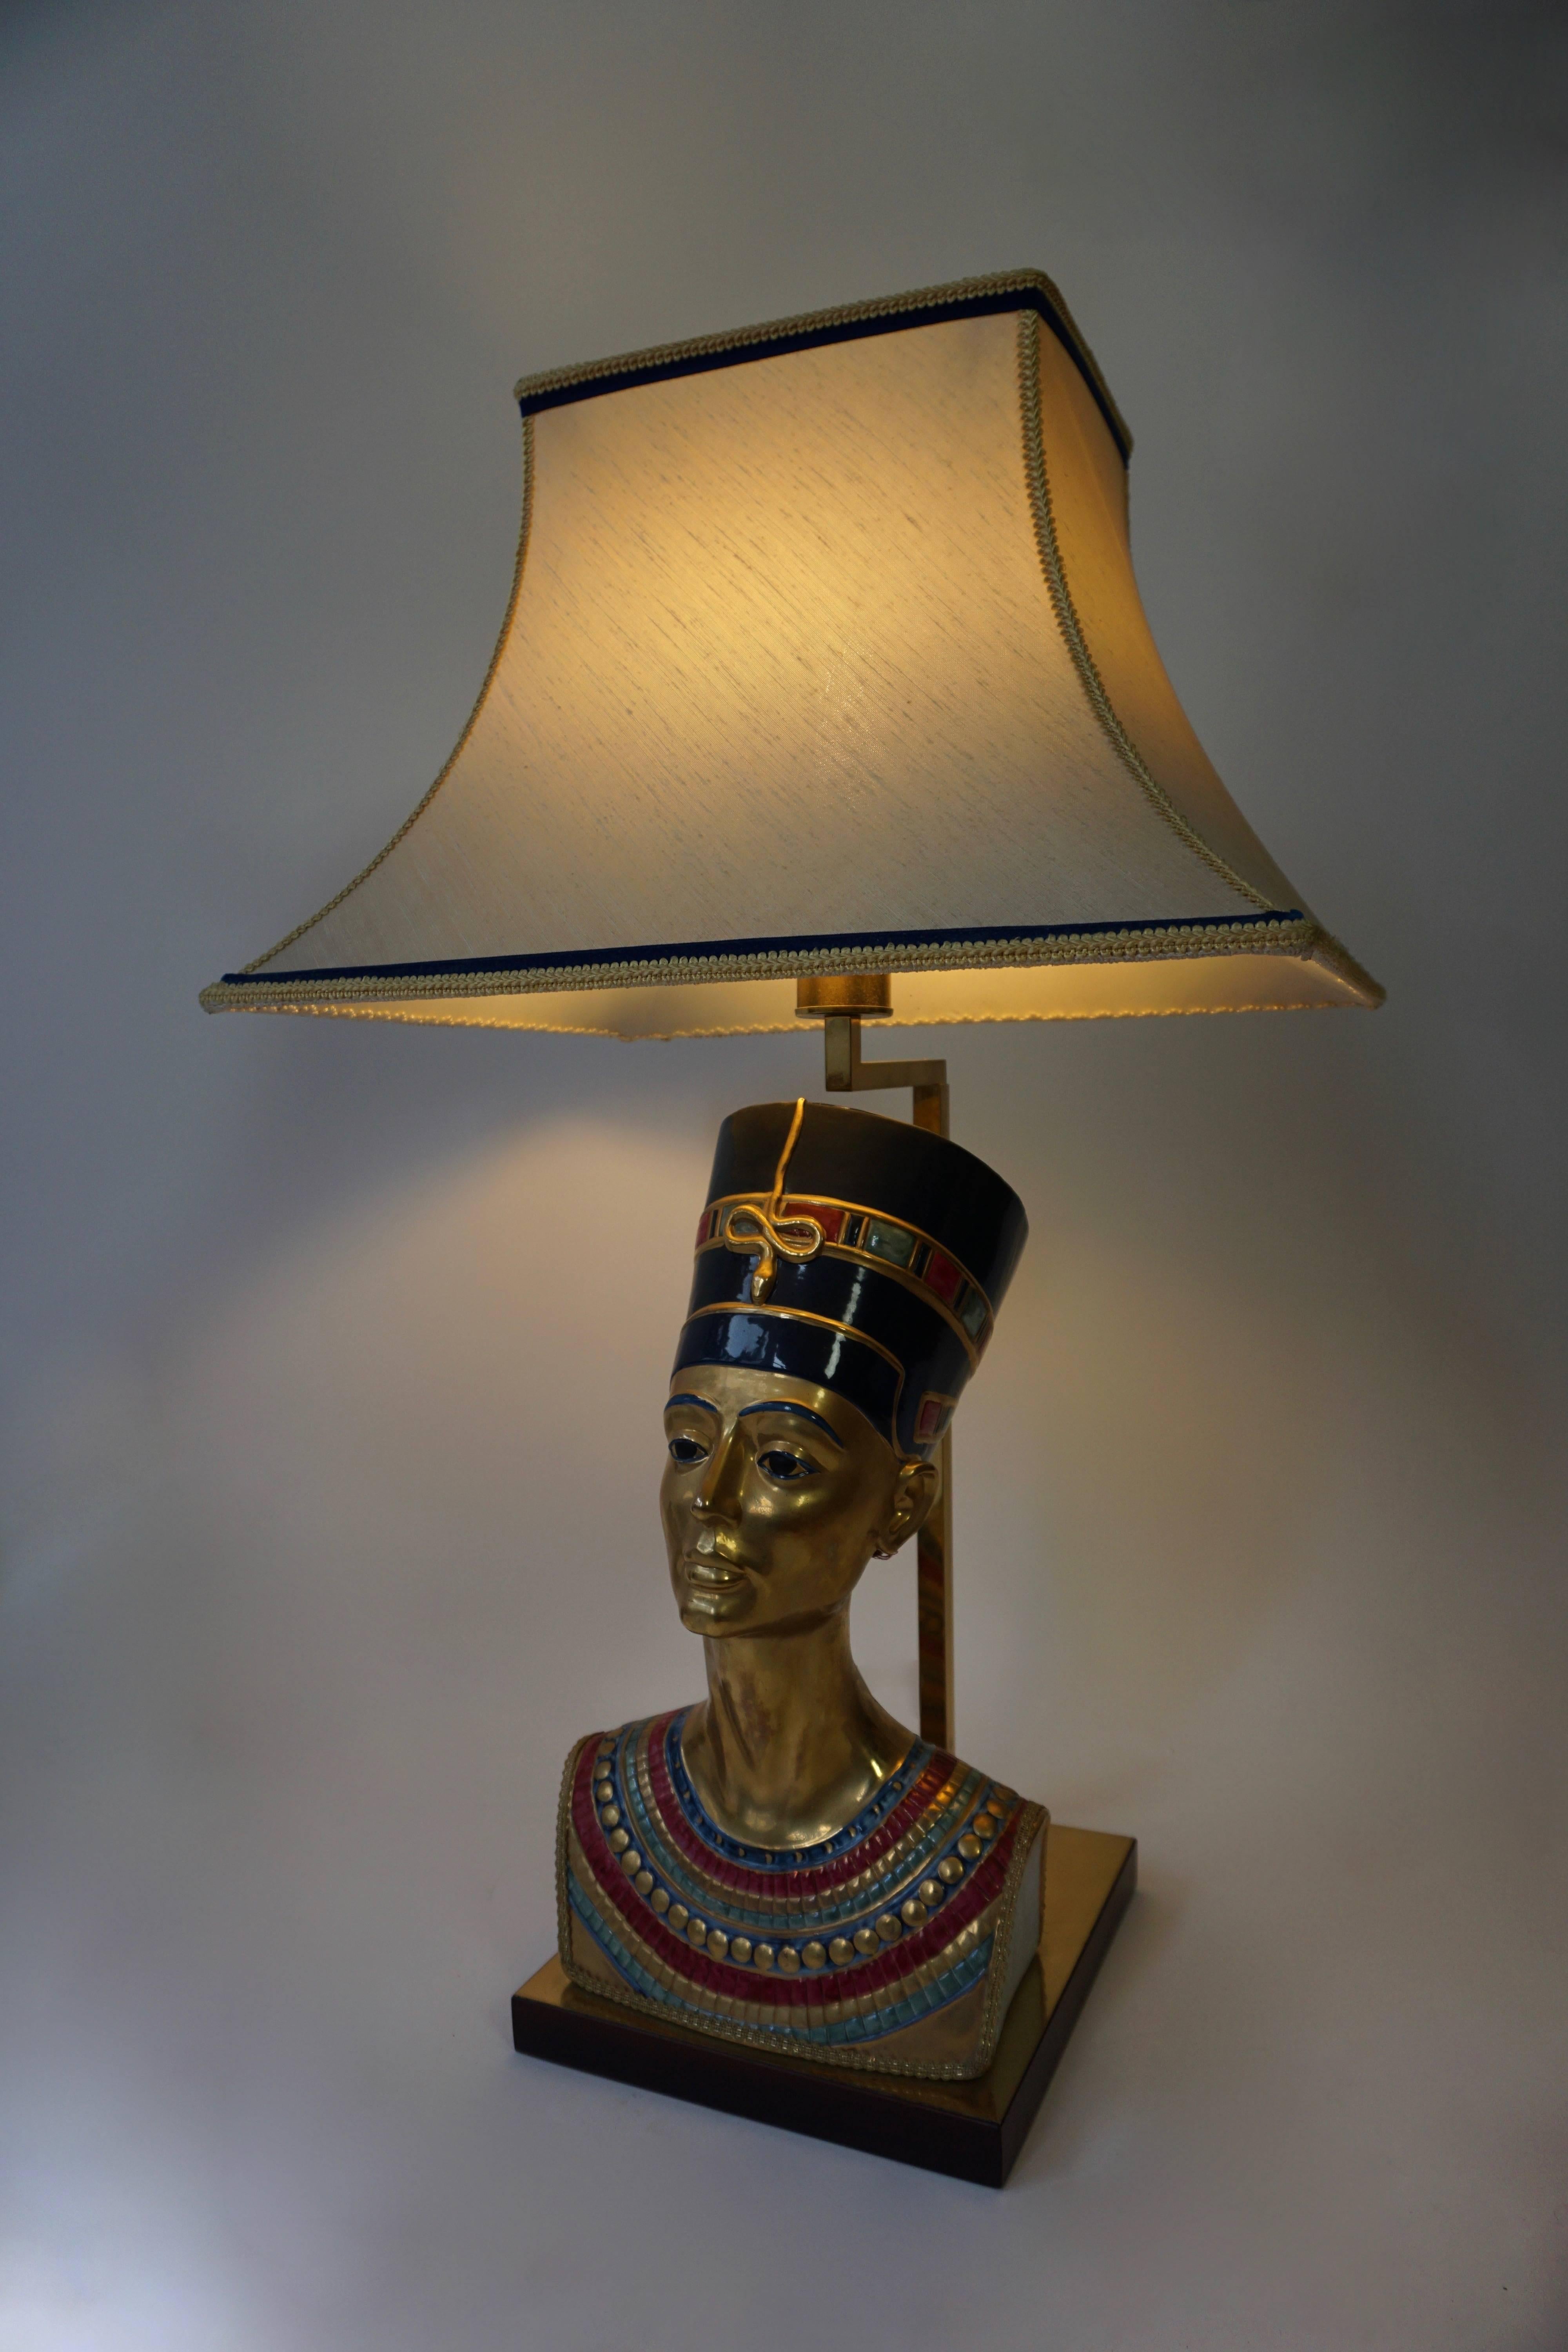 Superbes lampes de table en porcelaine italienne représentant la reine égyptienne Nefertiti. Superbes détails ciselés, bijoux et pièces de tête, magnifique patine.
Signé Edoardo Tasca.
Hauteur : 86 cm.
Largeur : 51 cm.
Profondeur : 41 cm.